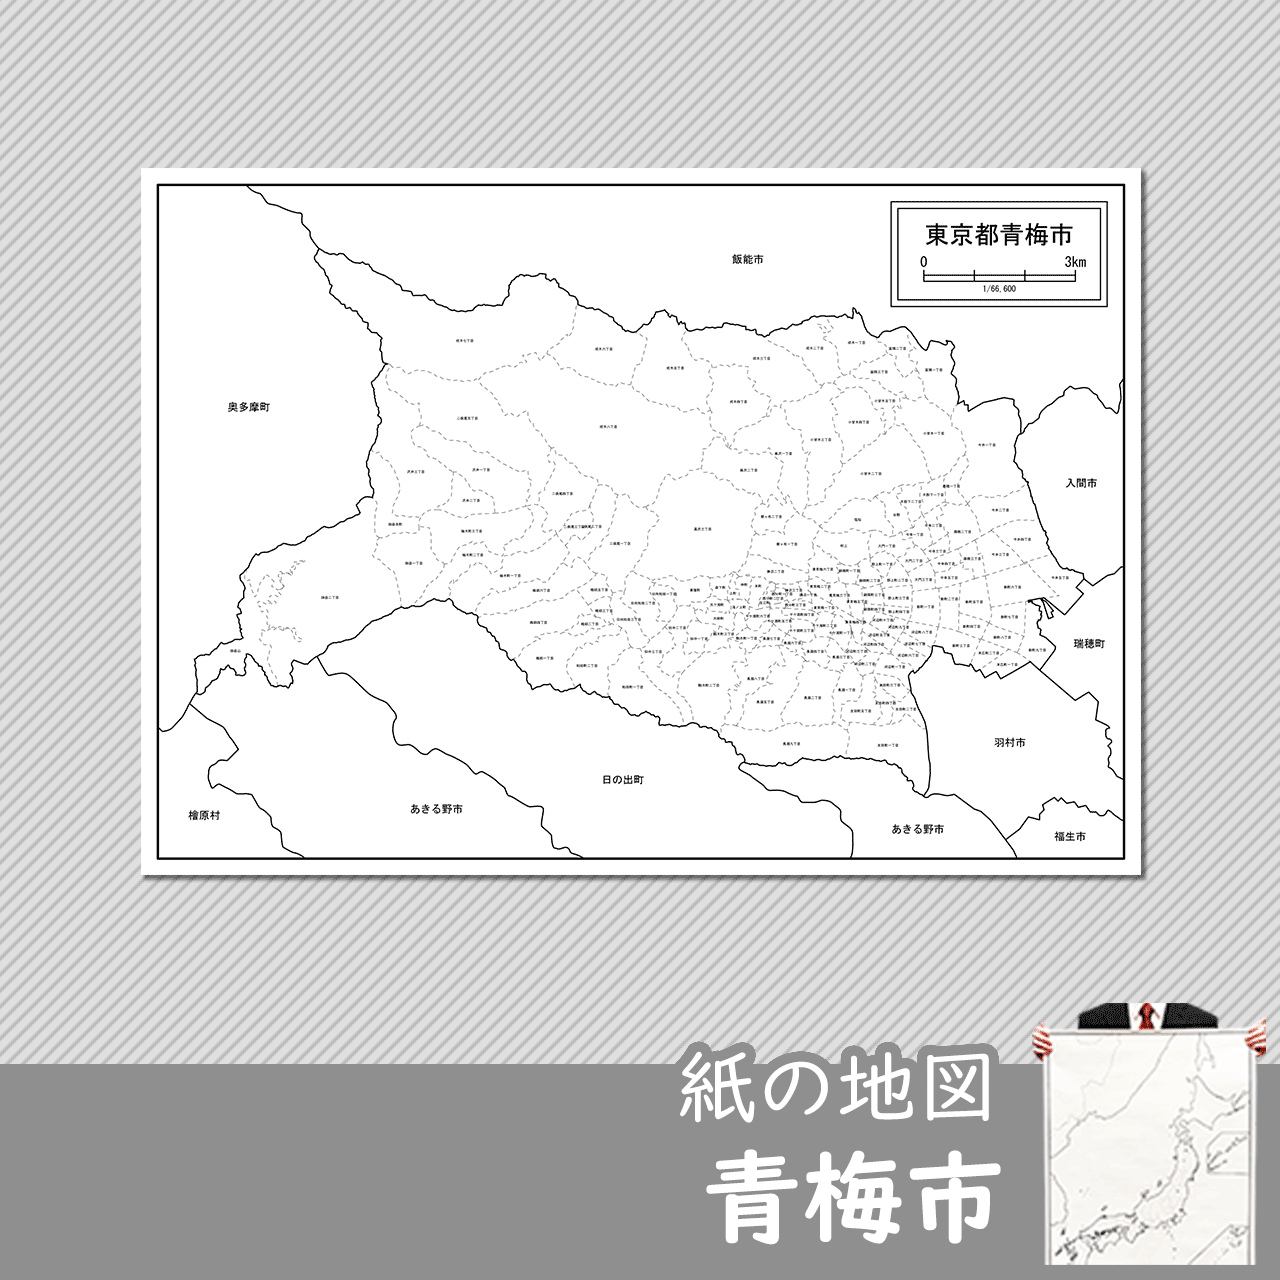 青梅市の紙の白地図のサムネイル